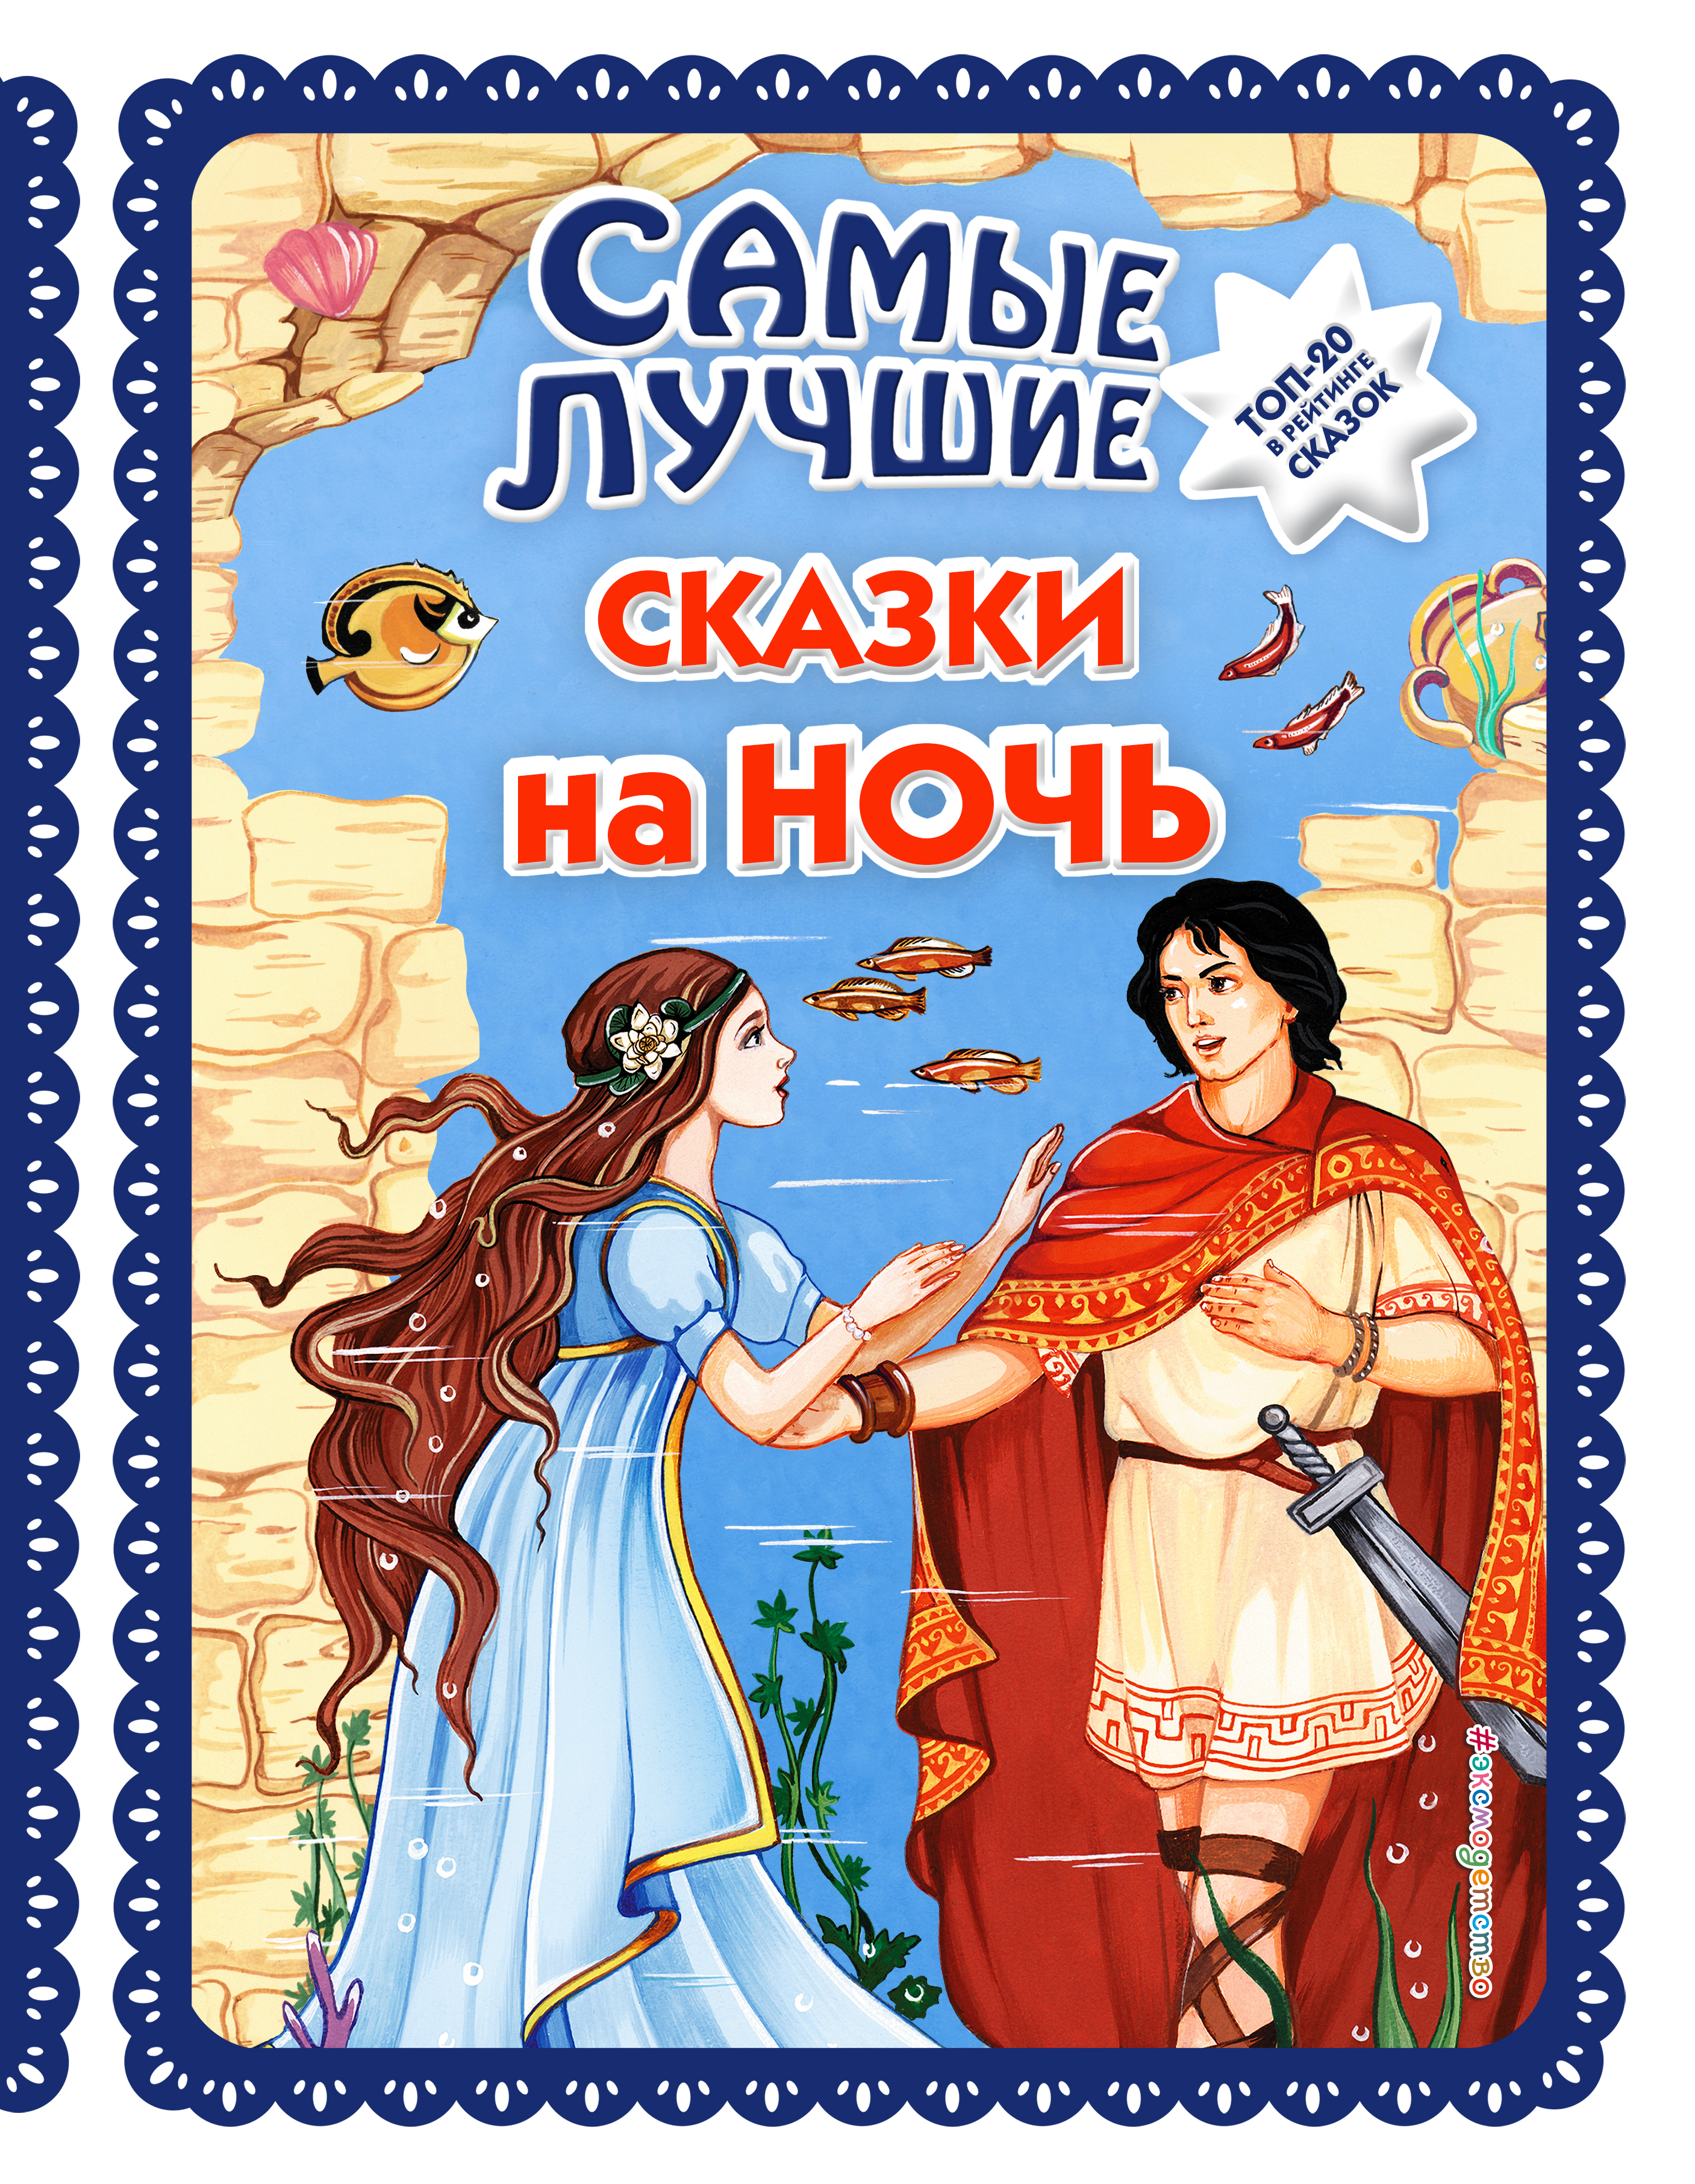 Сказка онлайн детям: Русские народные сказки слушать онлайн и скачать